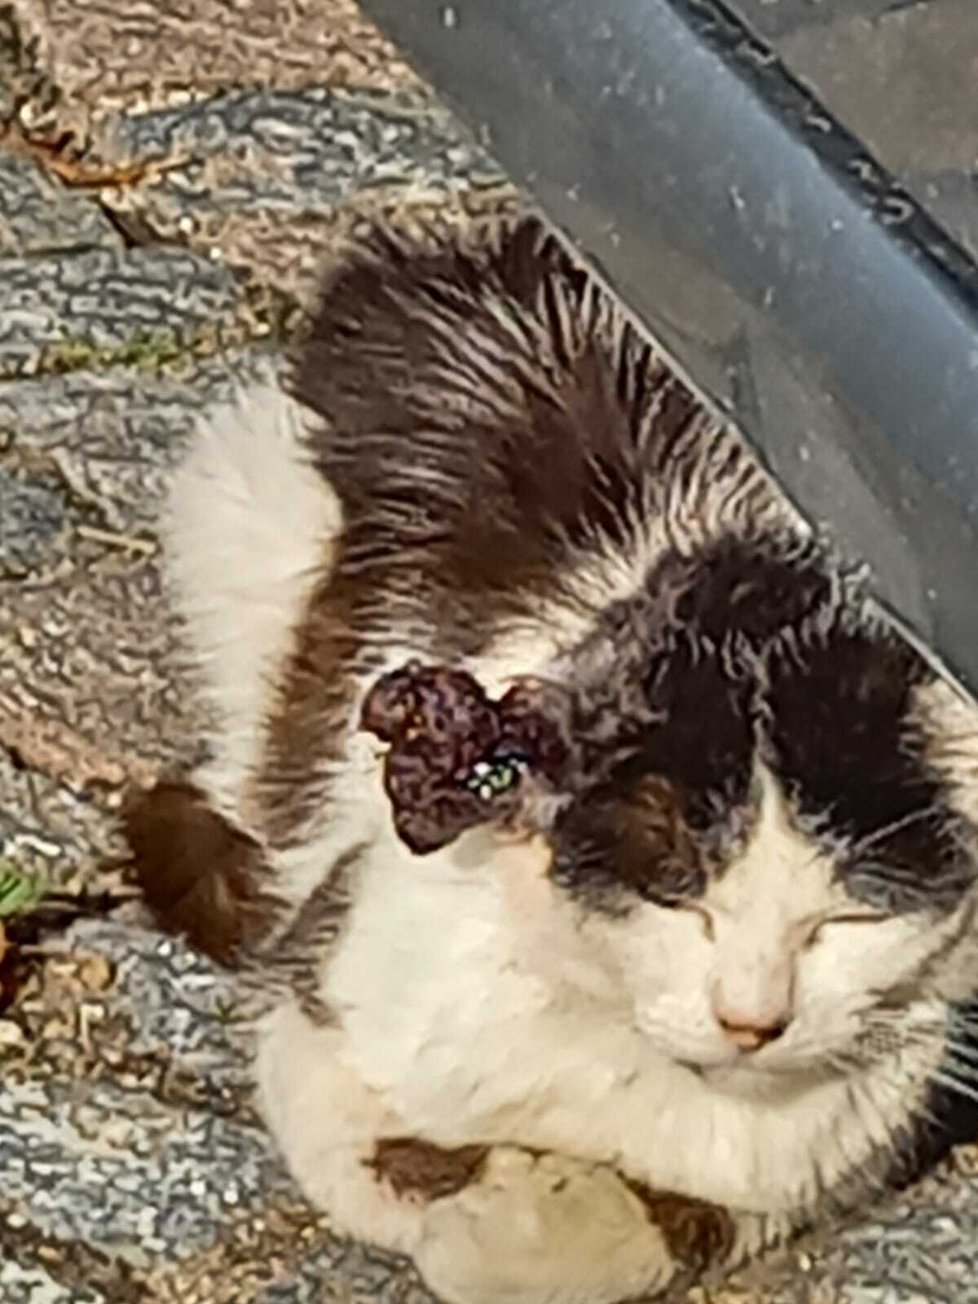 Kočka s obřím nádorem na uchu žila v Ústí nad Orlicí na ulici, ukrývala se pod auty a žila z toho, co jí kdo dal